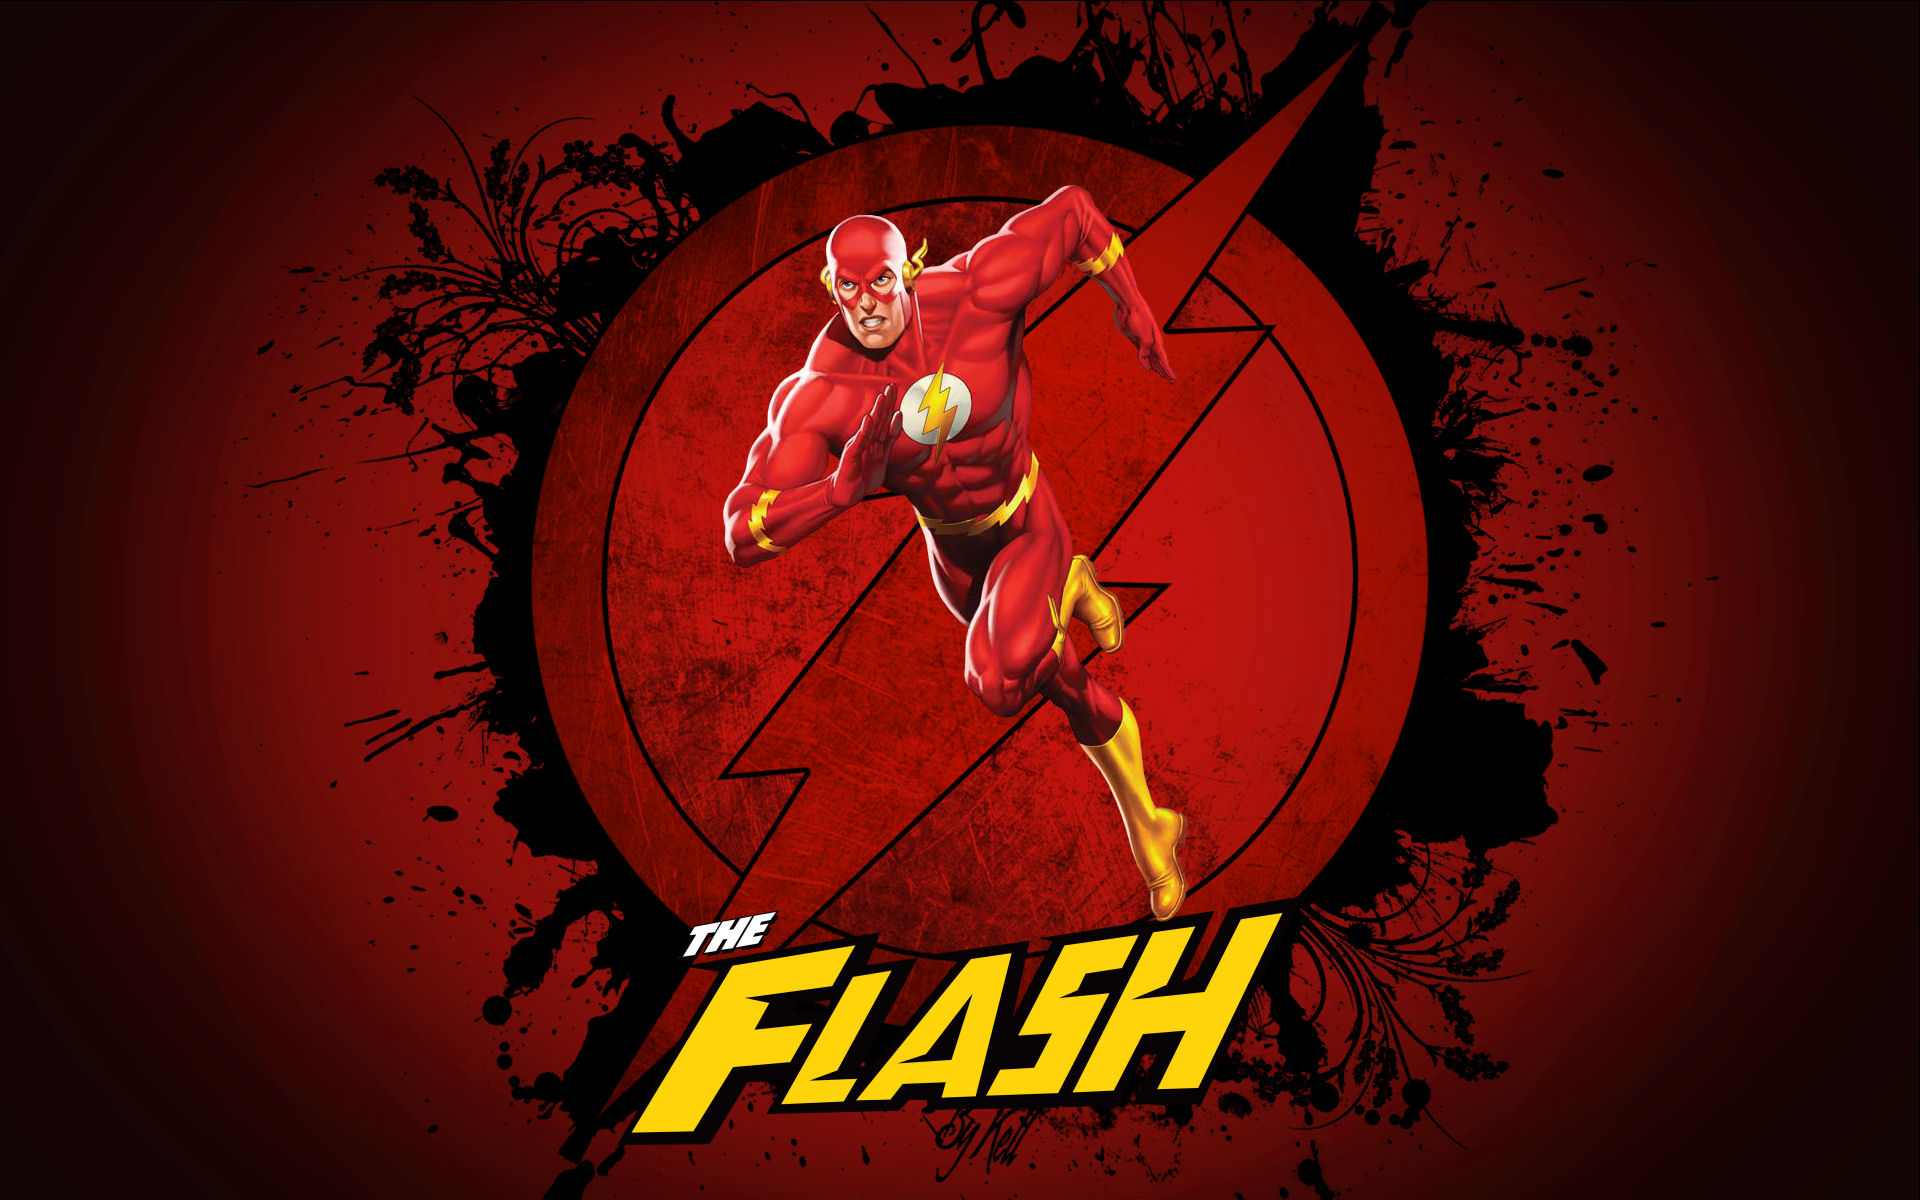 flash wallpaper,erfundener charakter,superheld,blitz,grafikdesign,poster